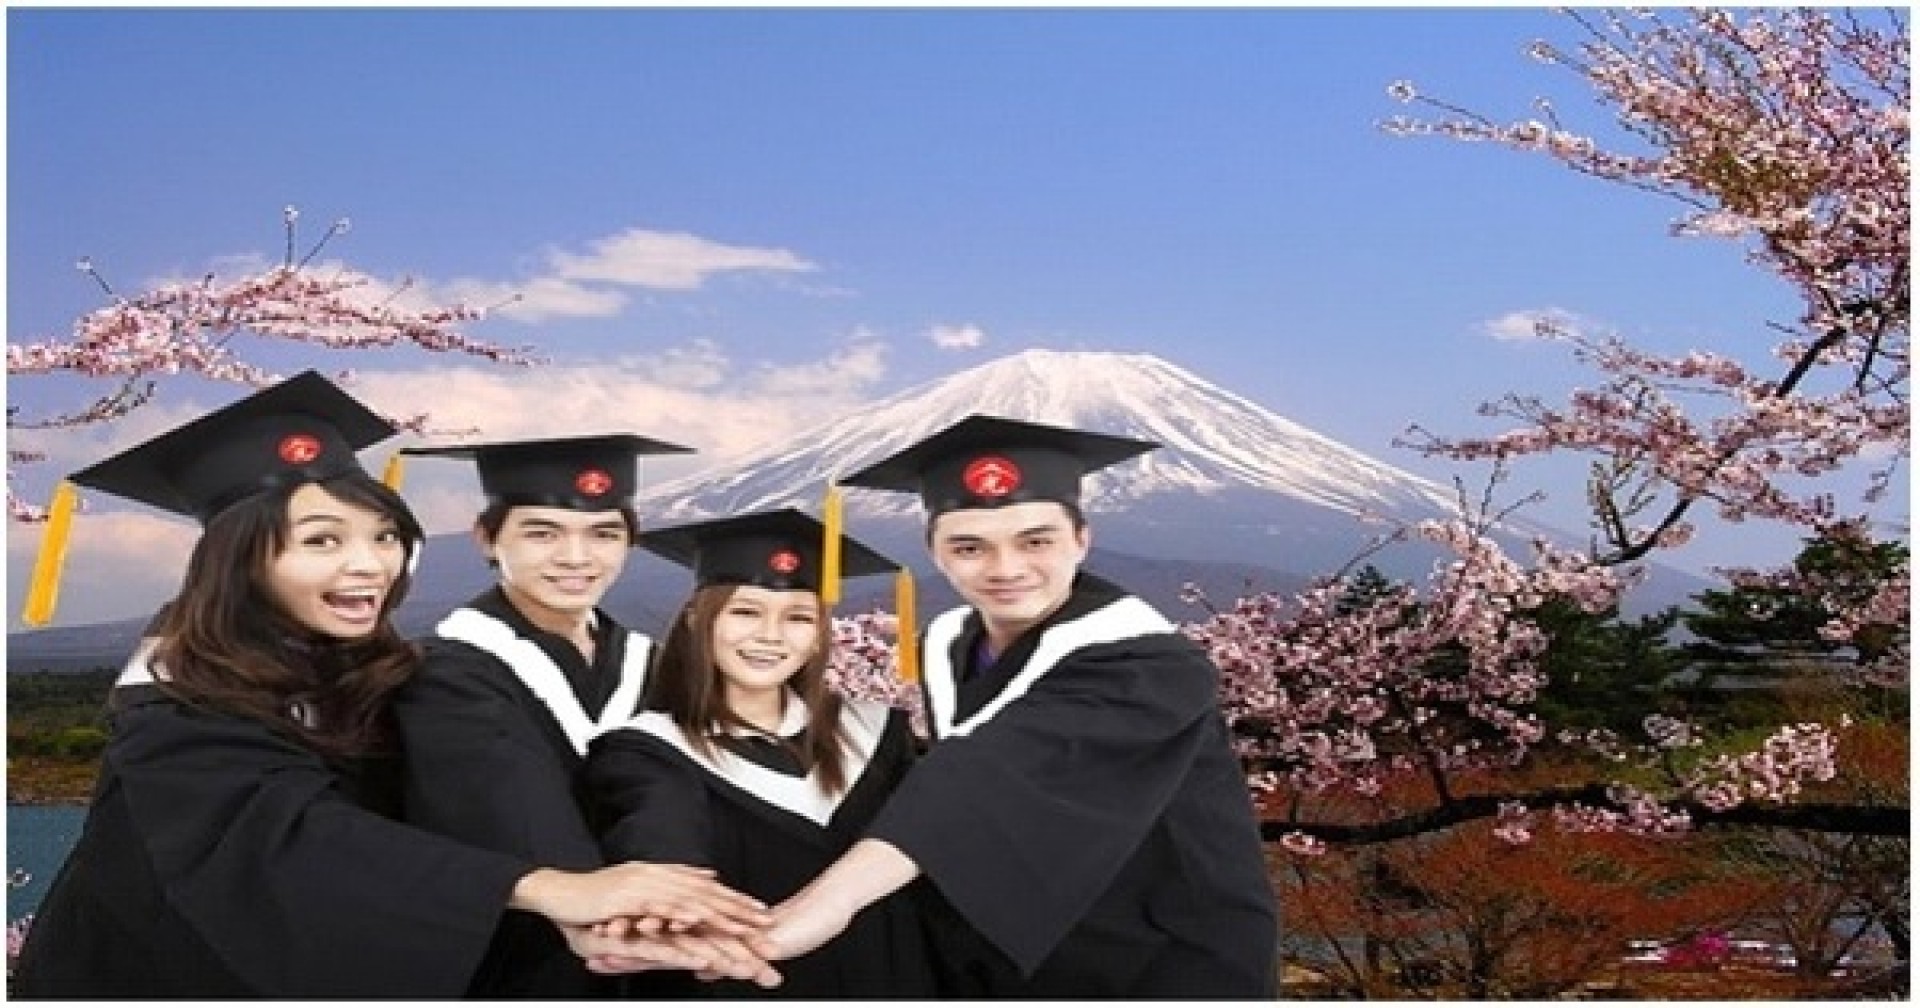 Trung tâm Nhật ngữ HTC - giải pháp tư vấn du học Nhật Bản hiệu quả